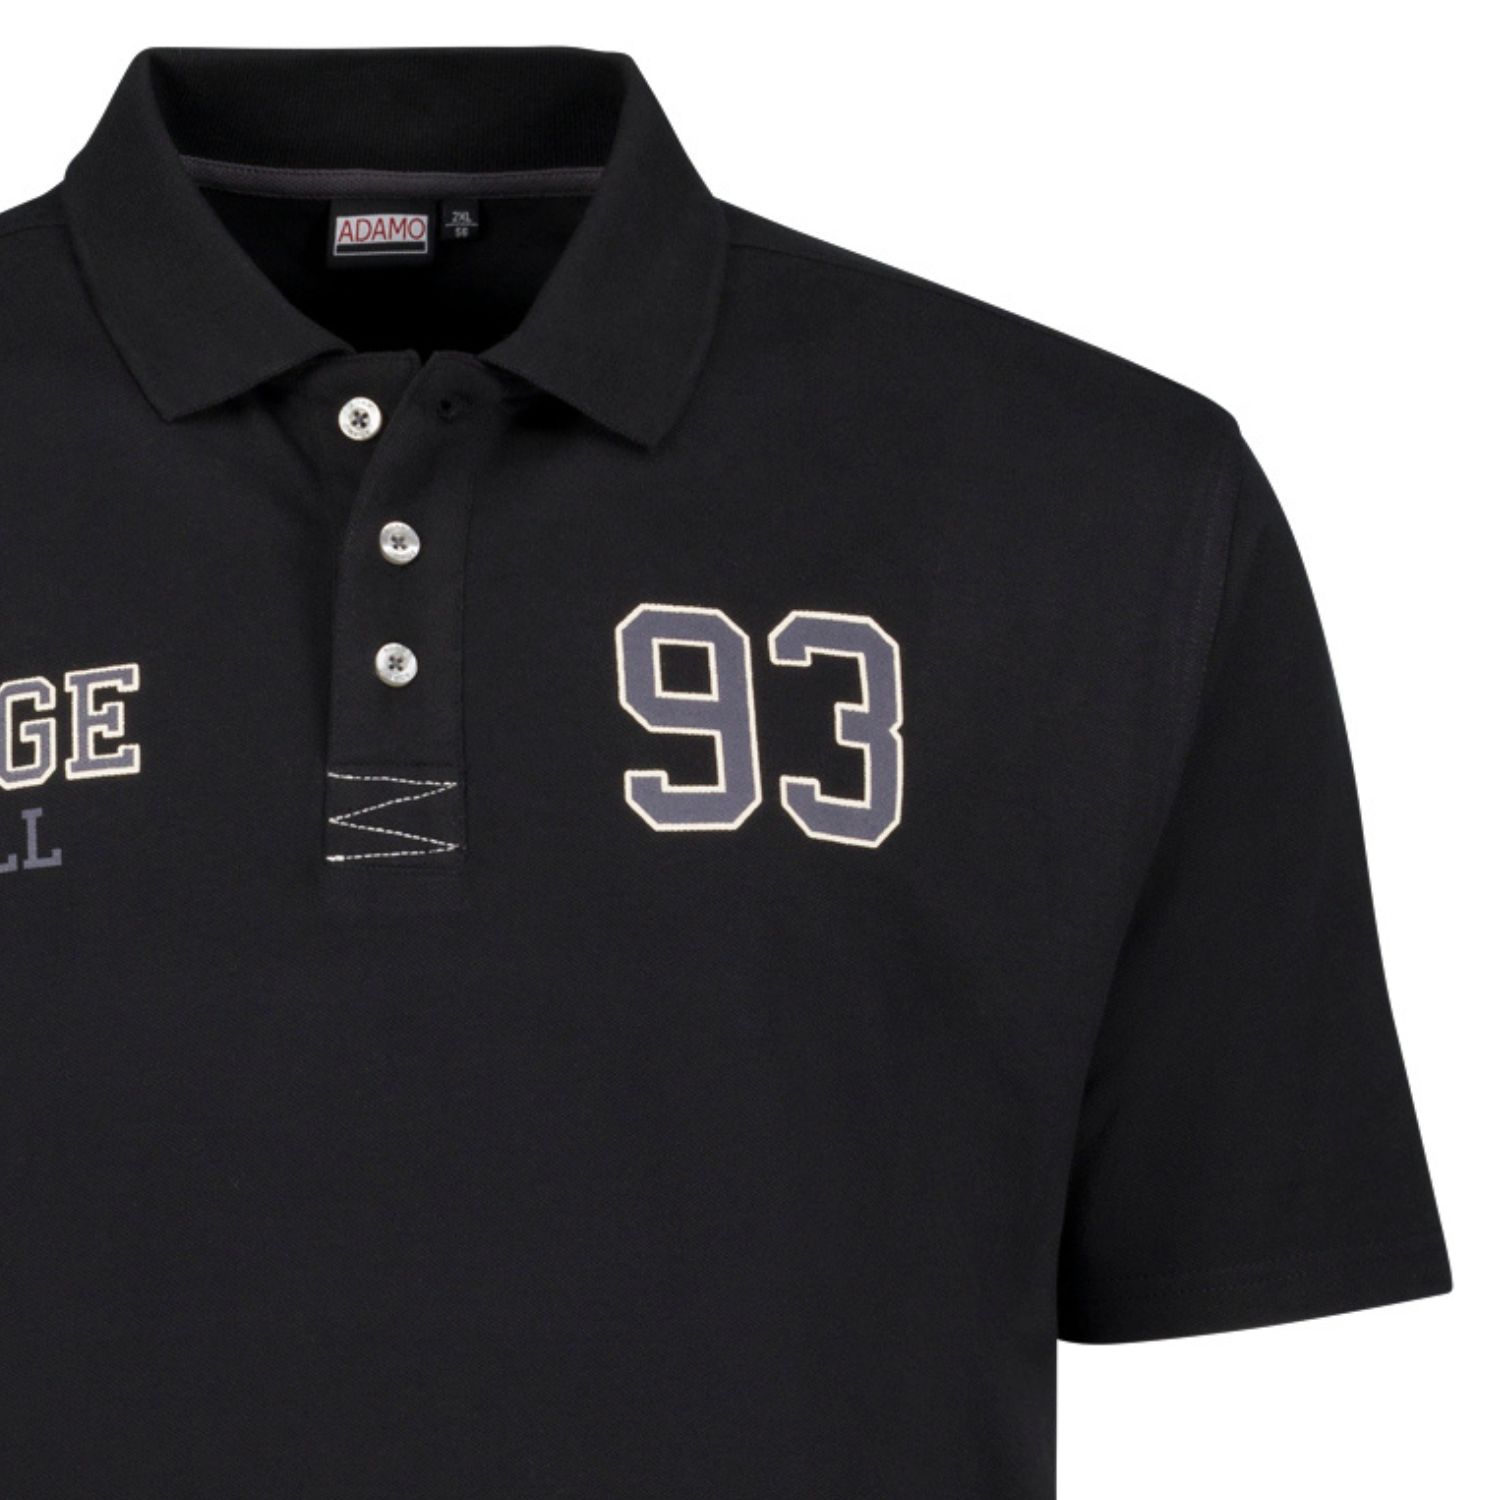 Schwarzes Herren Pique Poloshirt mit Print kurzarm von ADAMO Serie "COLLEGE" bis Übergröße 14XL Comfort Fit